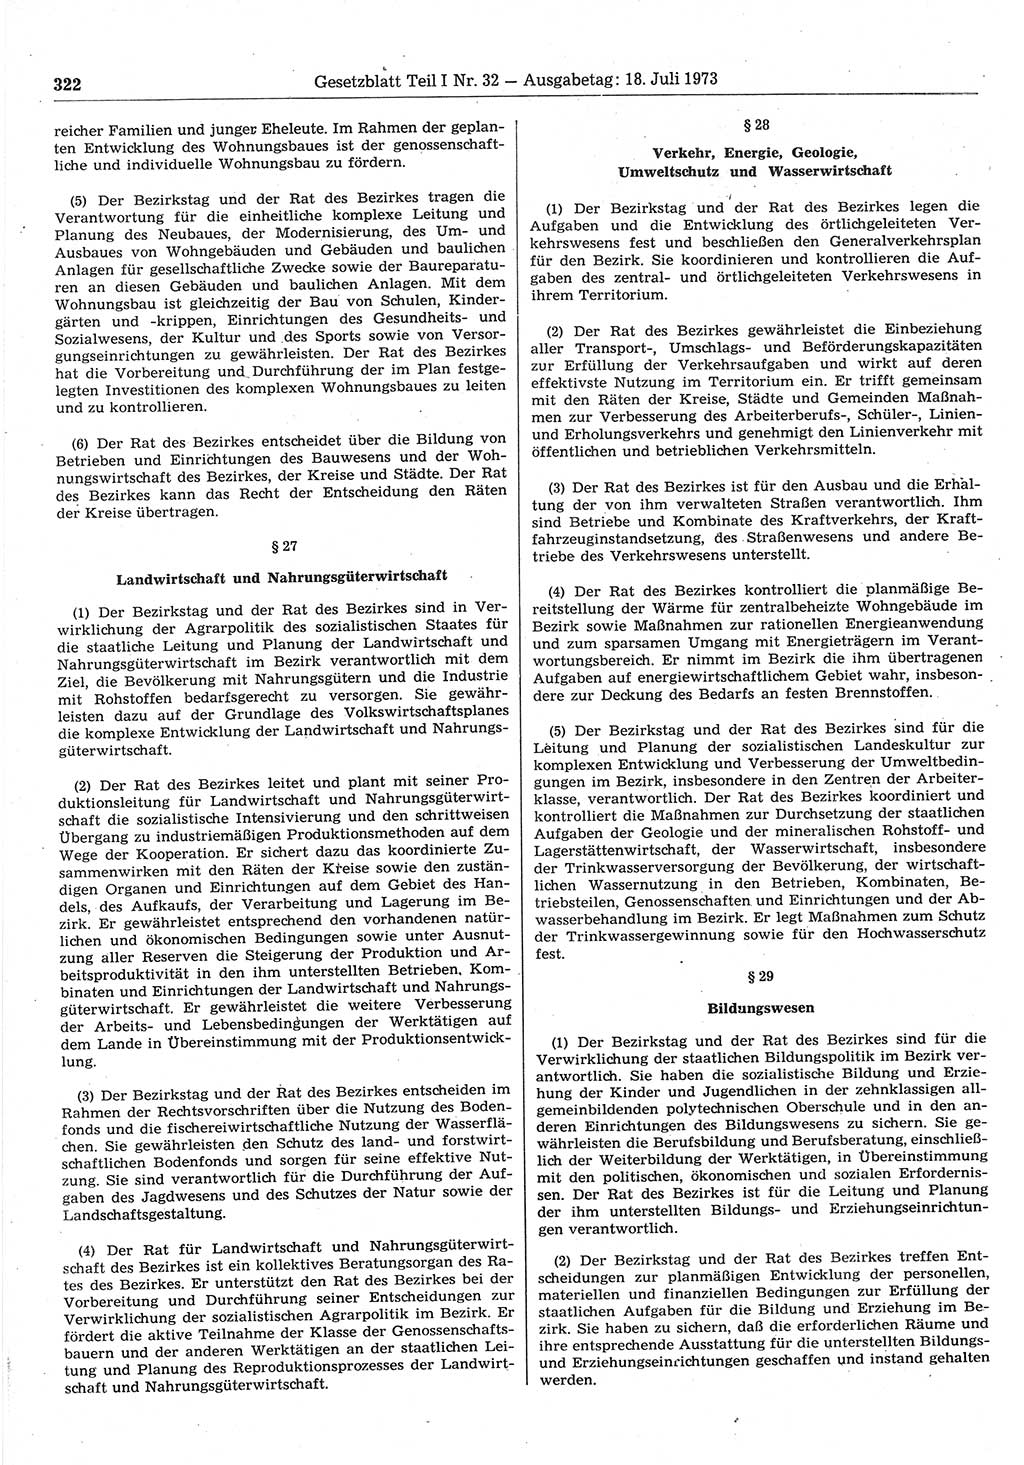 Gesetzblatt (GBl.) der Deutschen Demokratischen Republik (DDR) Teil Ⅰ 1973, Seite 322 (GBl. DDR Ⅰ 1973, S. 322)